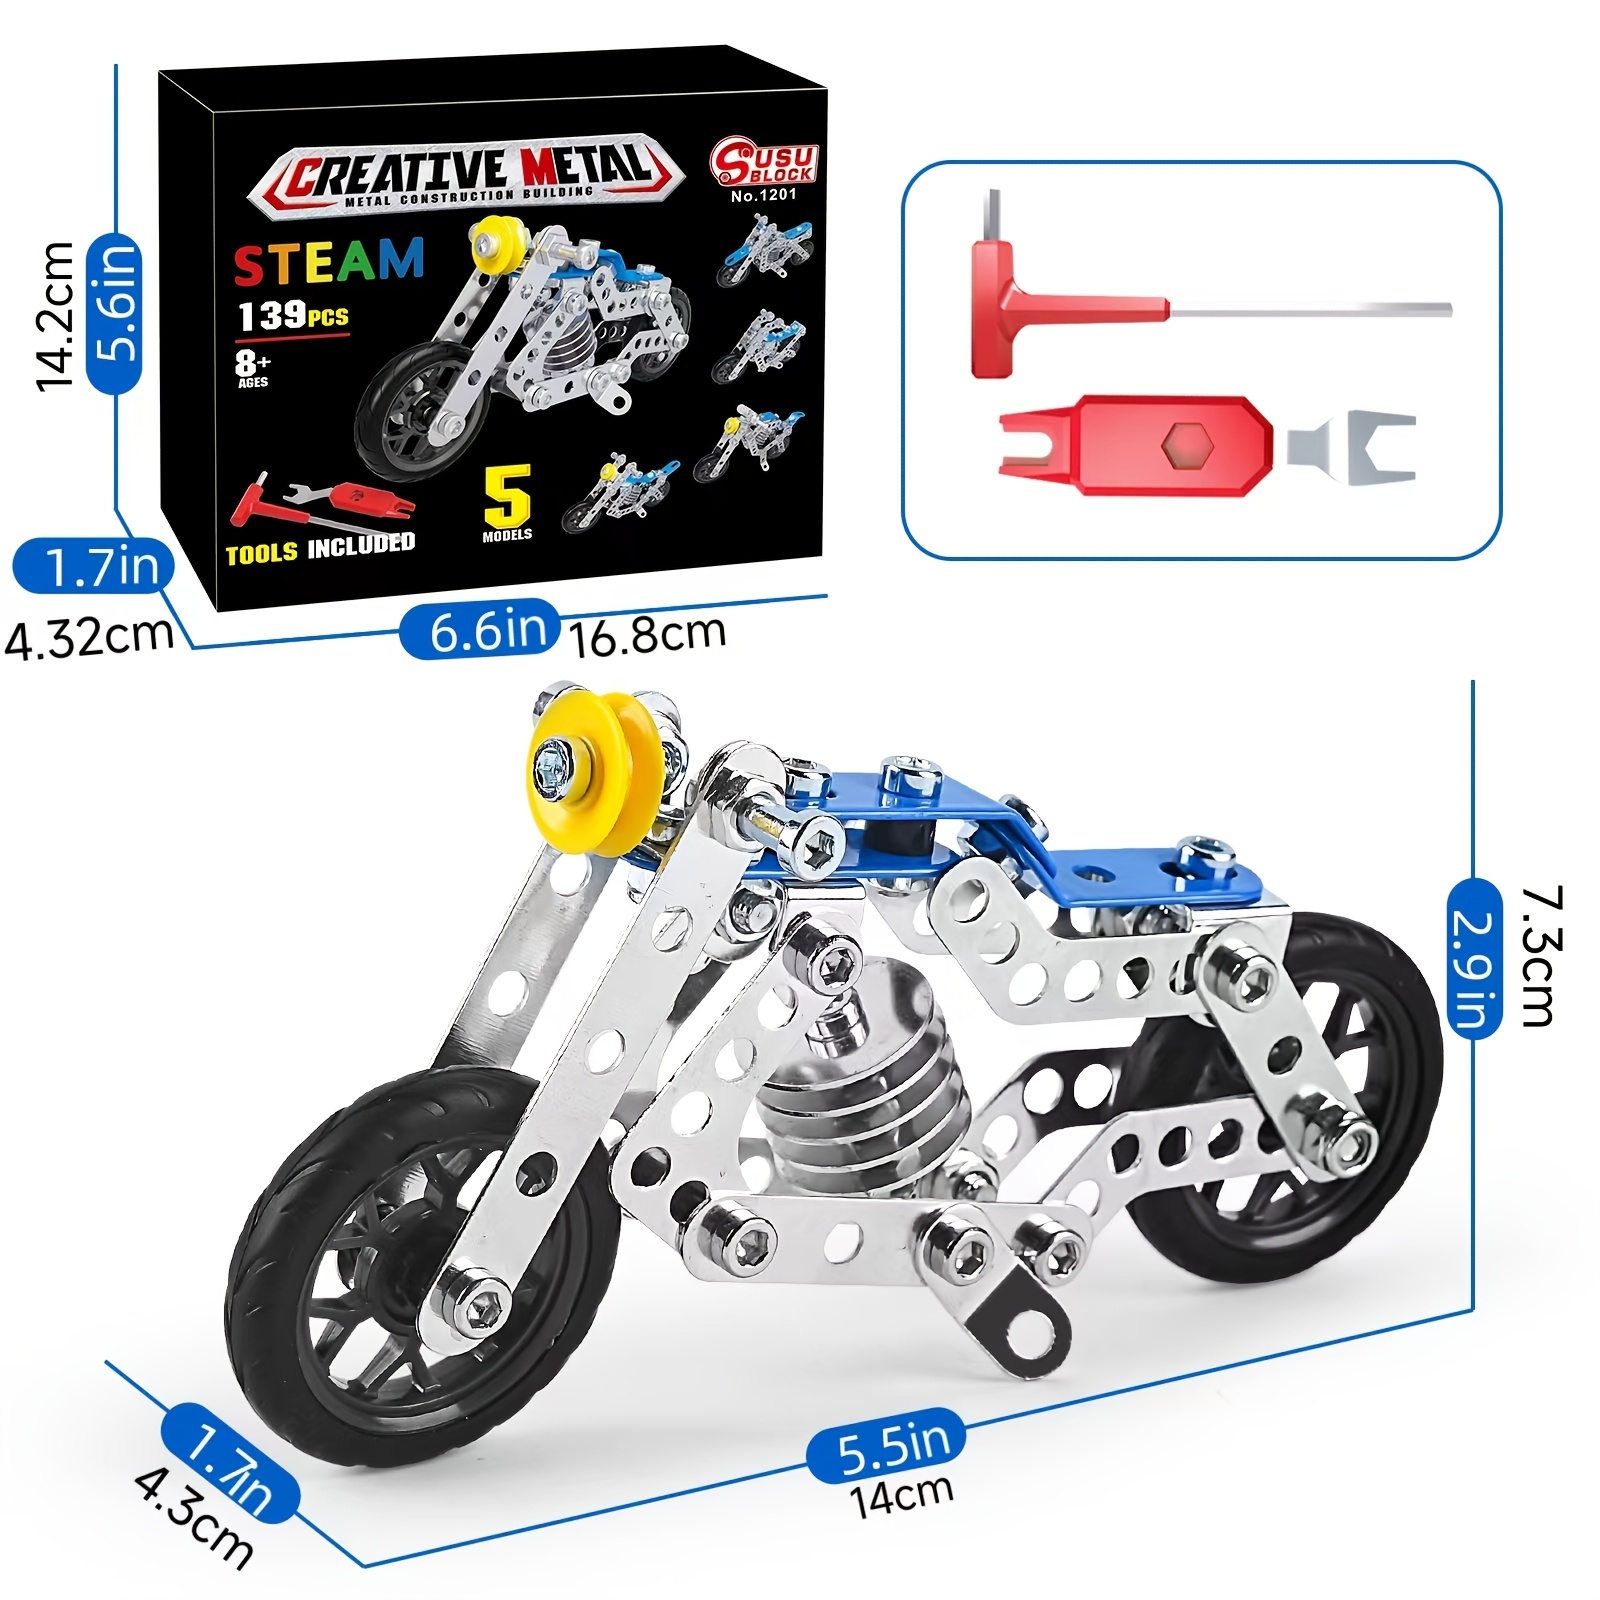 Motorcycle Kit